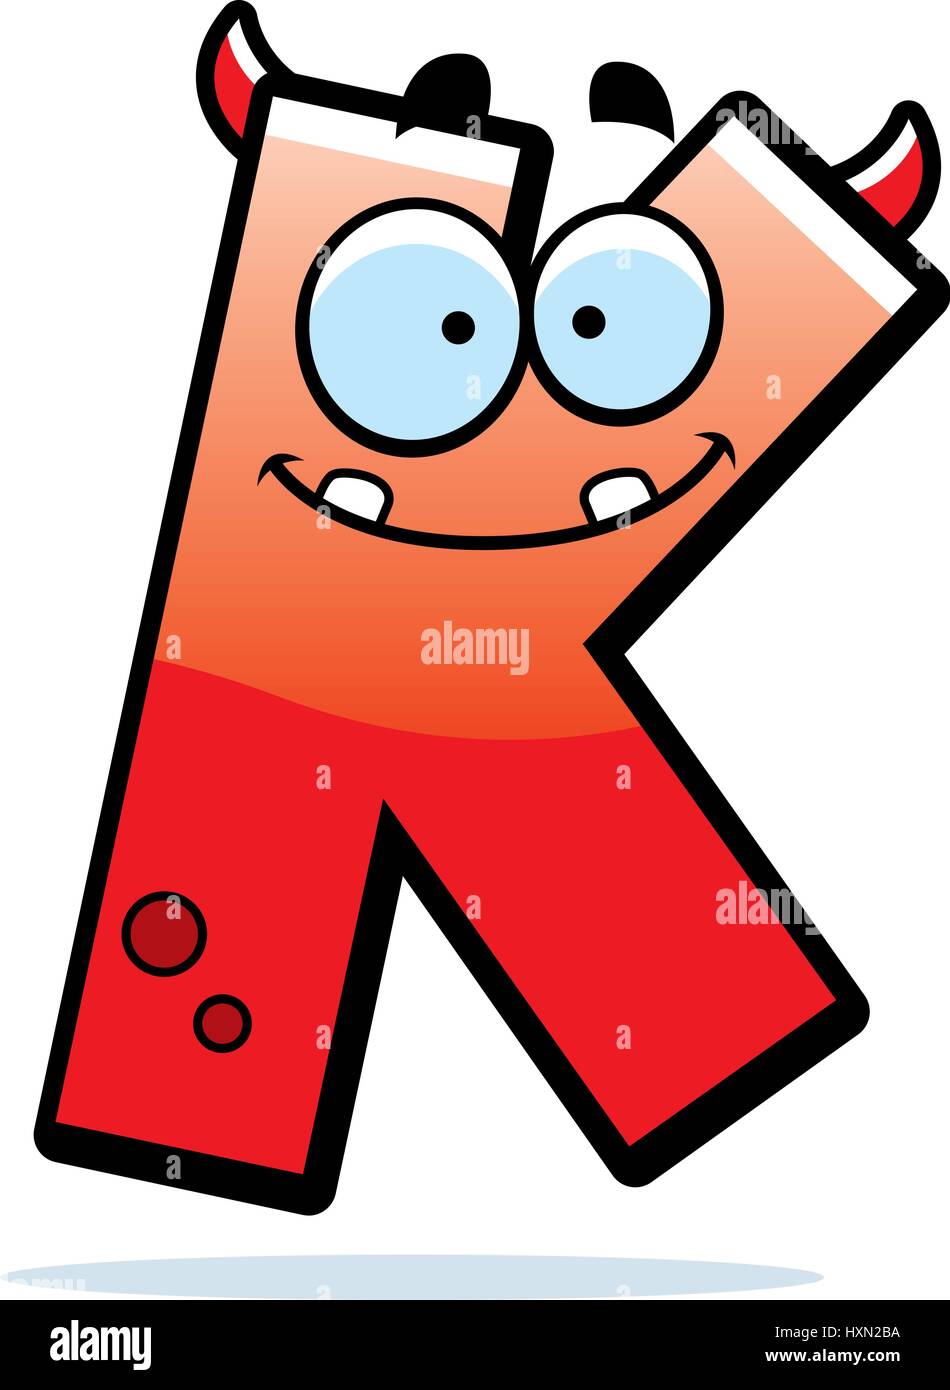 Illustration d'une caricature d'une lettre K monster souriant et heureux  Image Vectorielle Stock - Alamy